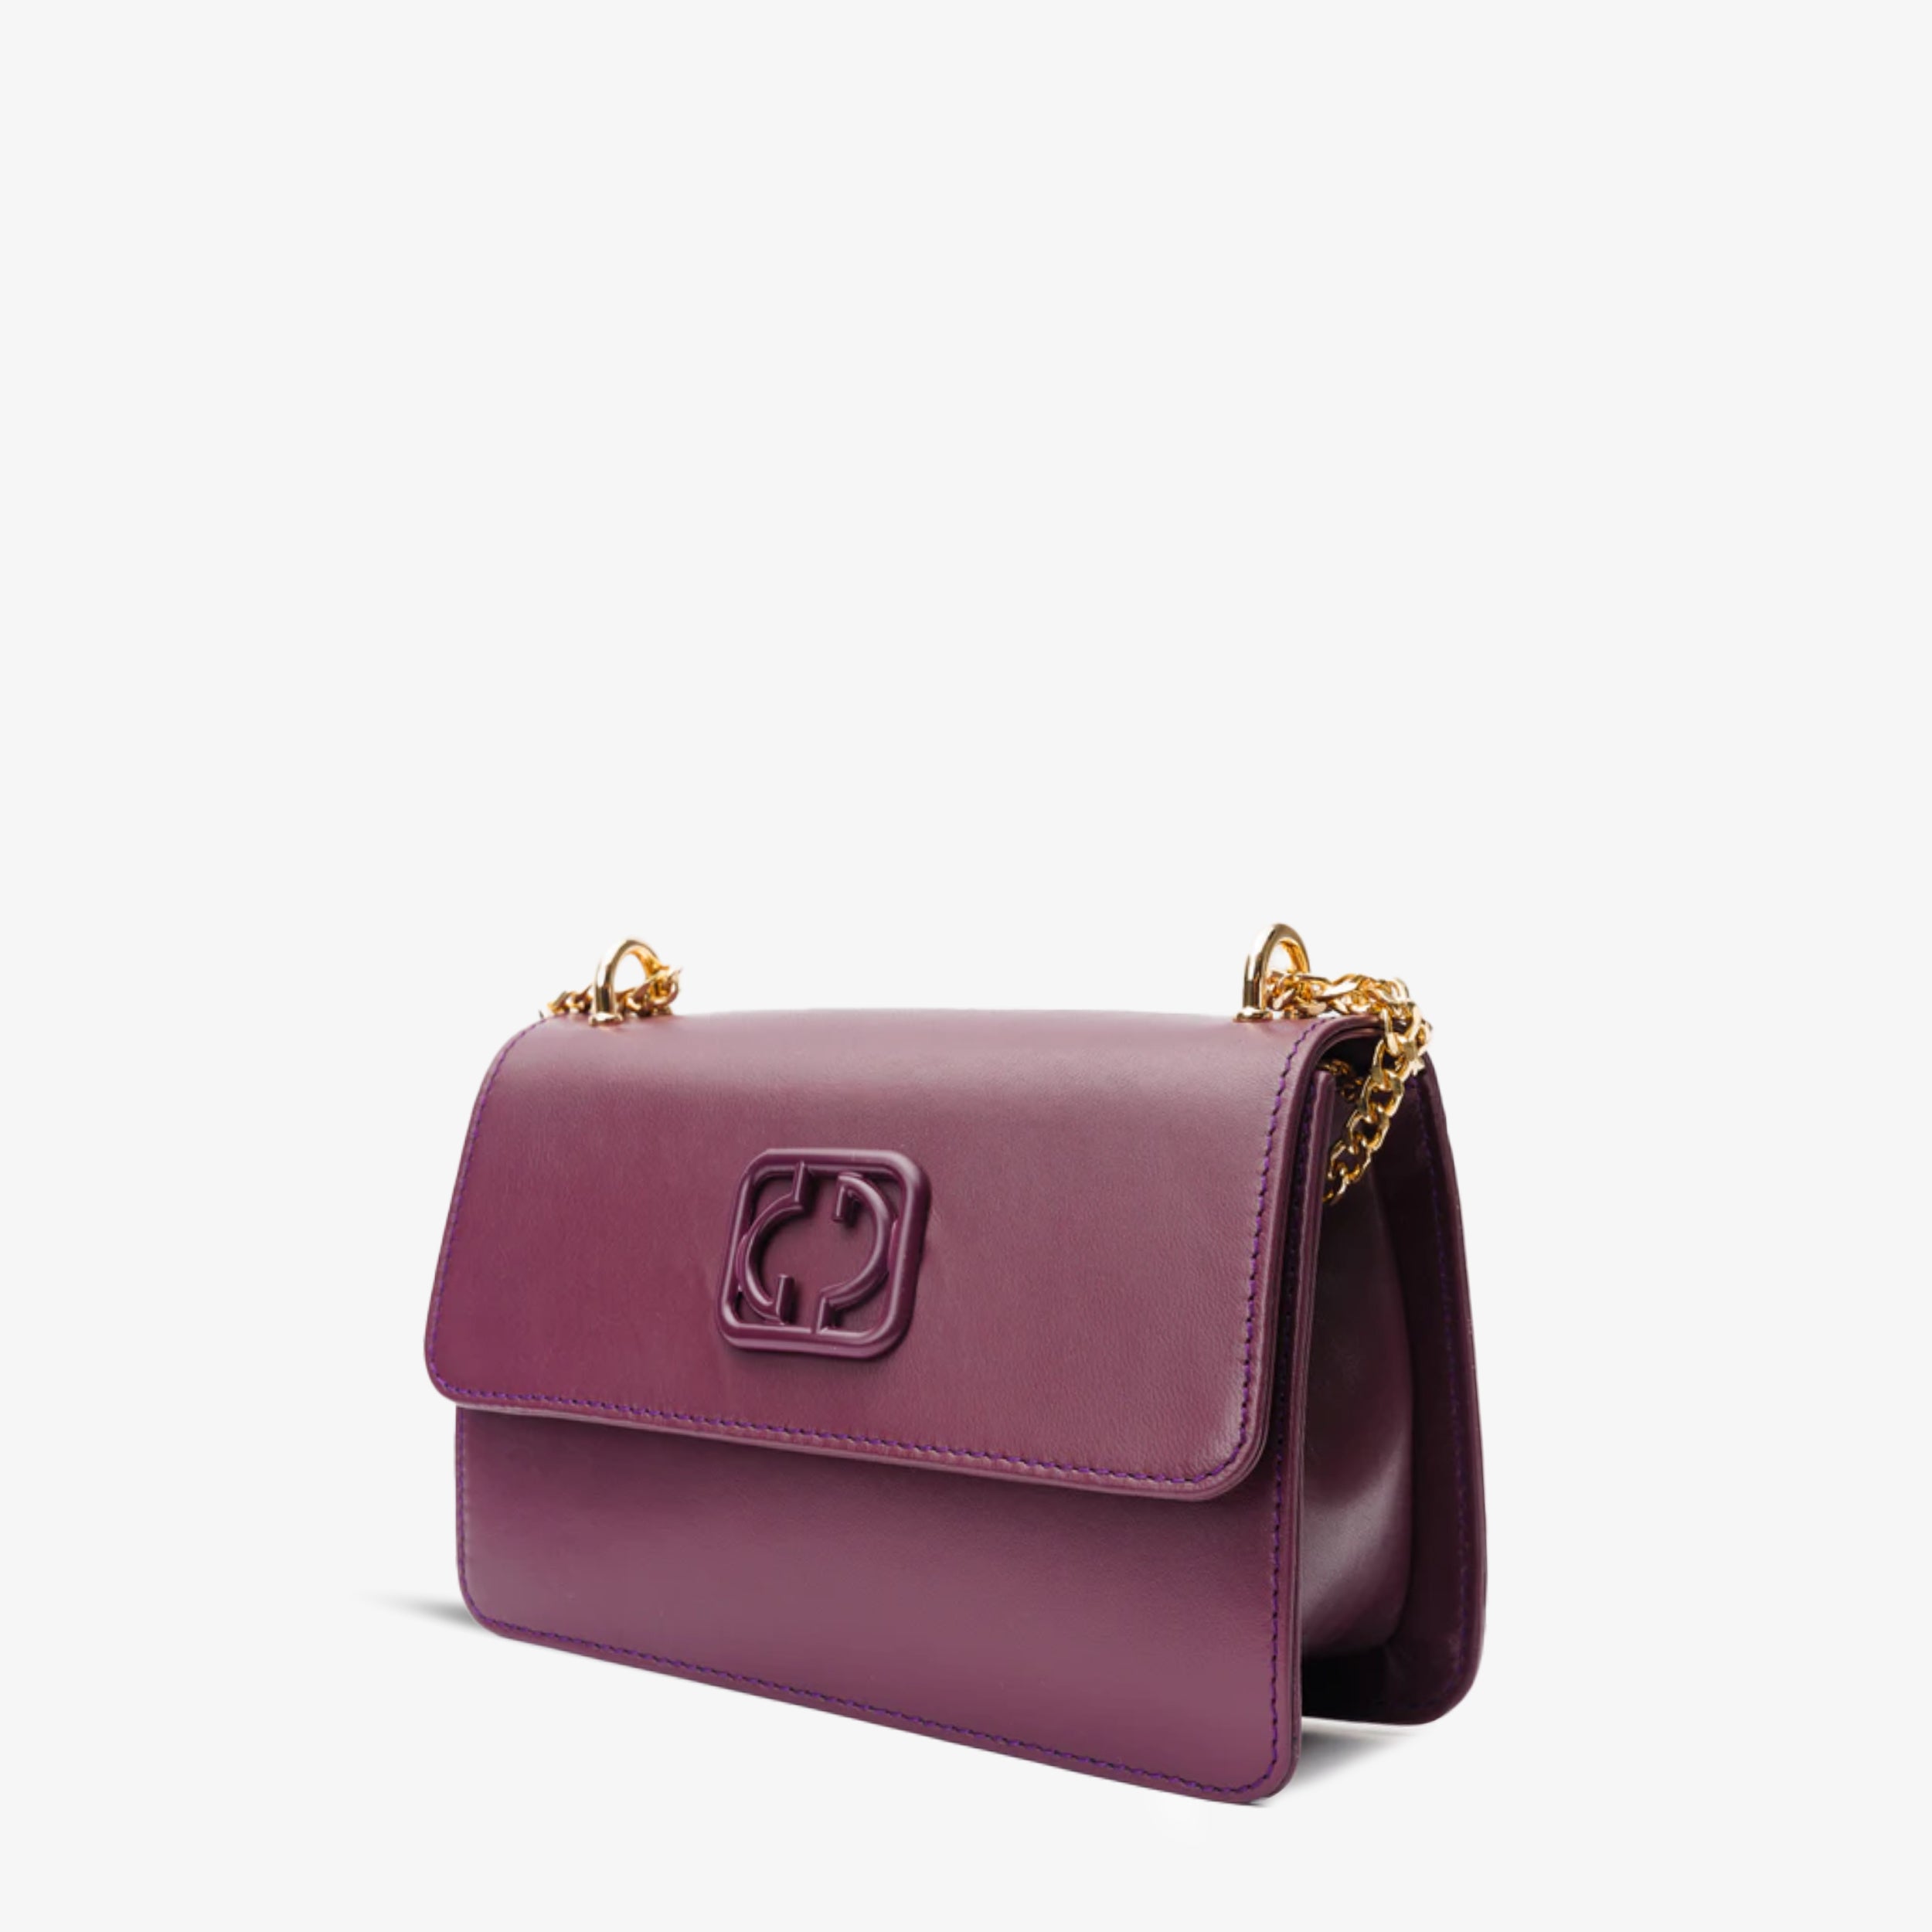 The Maneadero Purple Leather Handbag